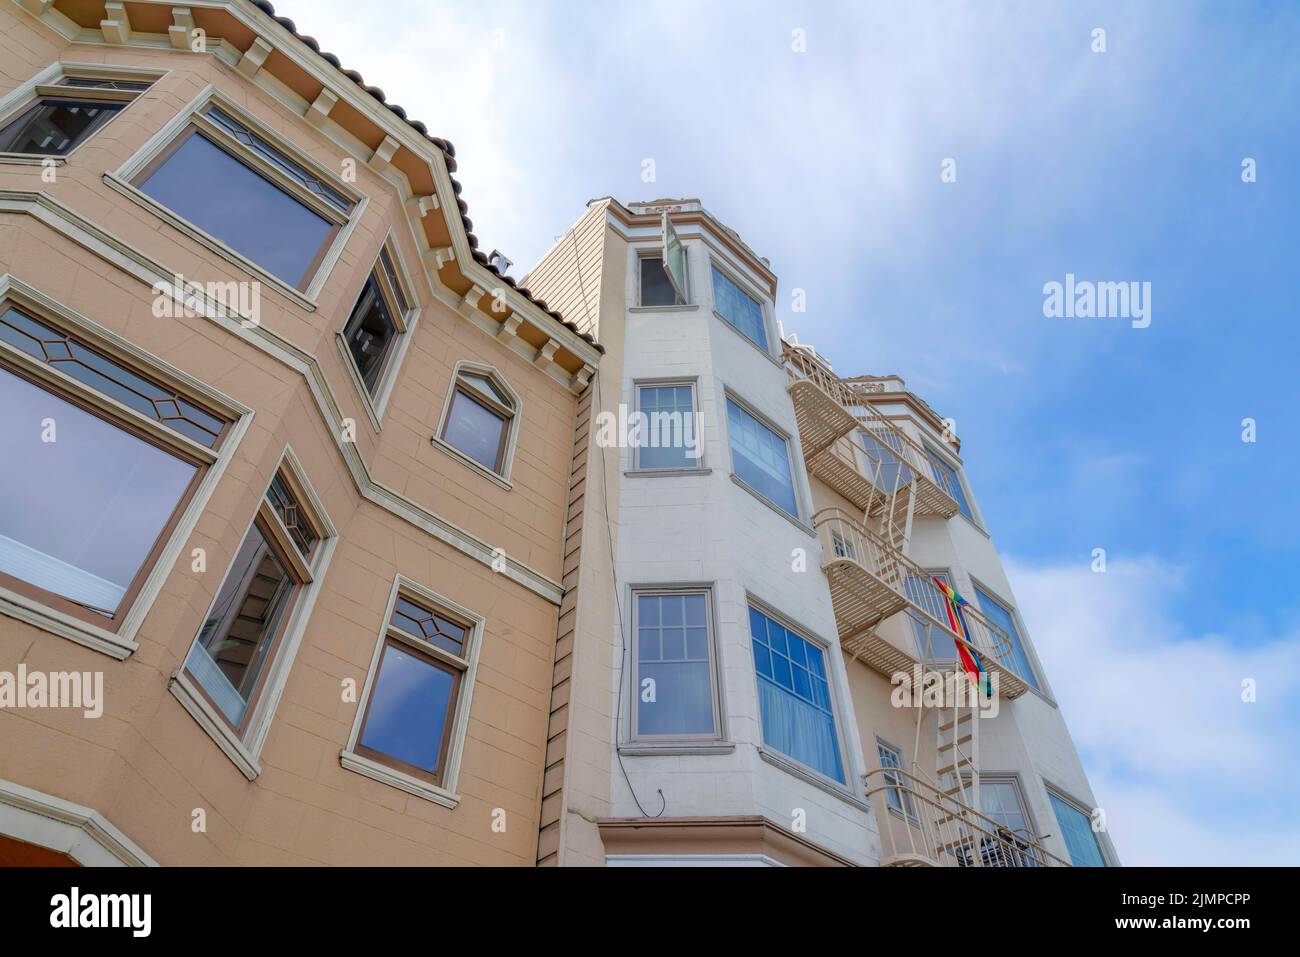 Maison de ville et immeuble d'appartements de plusieurs étages à San Francisco, Californie. Il y a une maison de ville avec une façade beige foncé sur la gauche à côté de l'appartement Banque D'Images